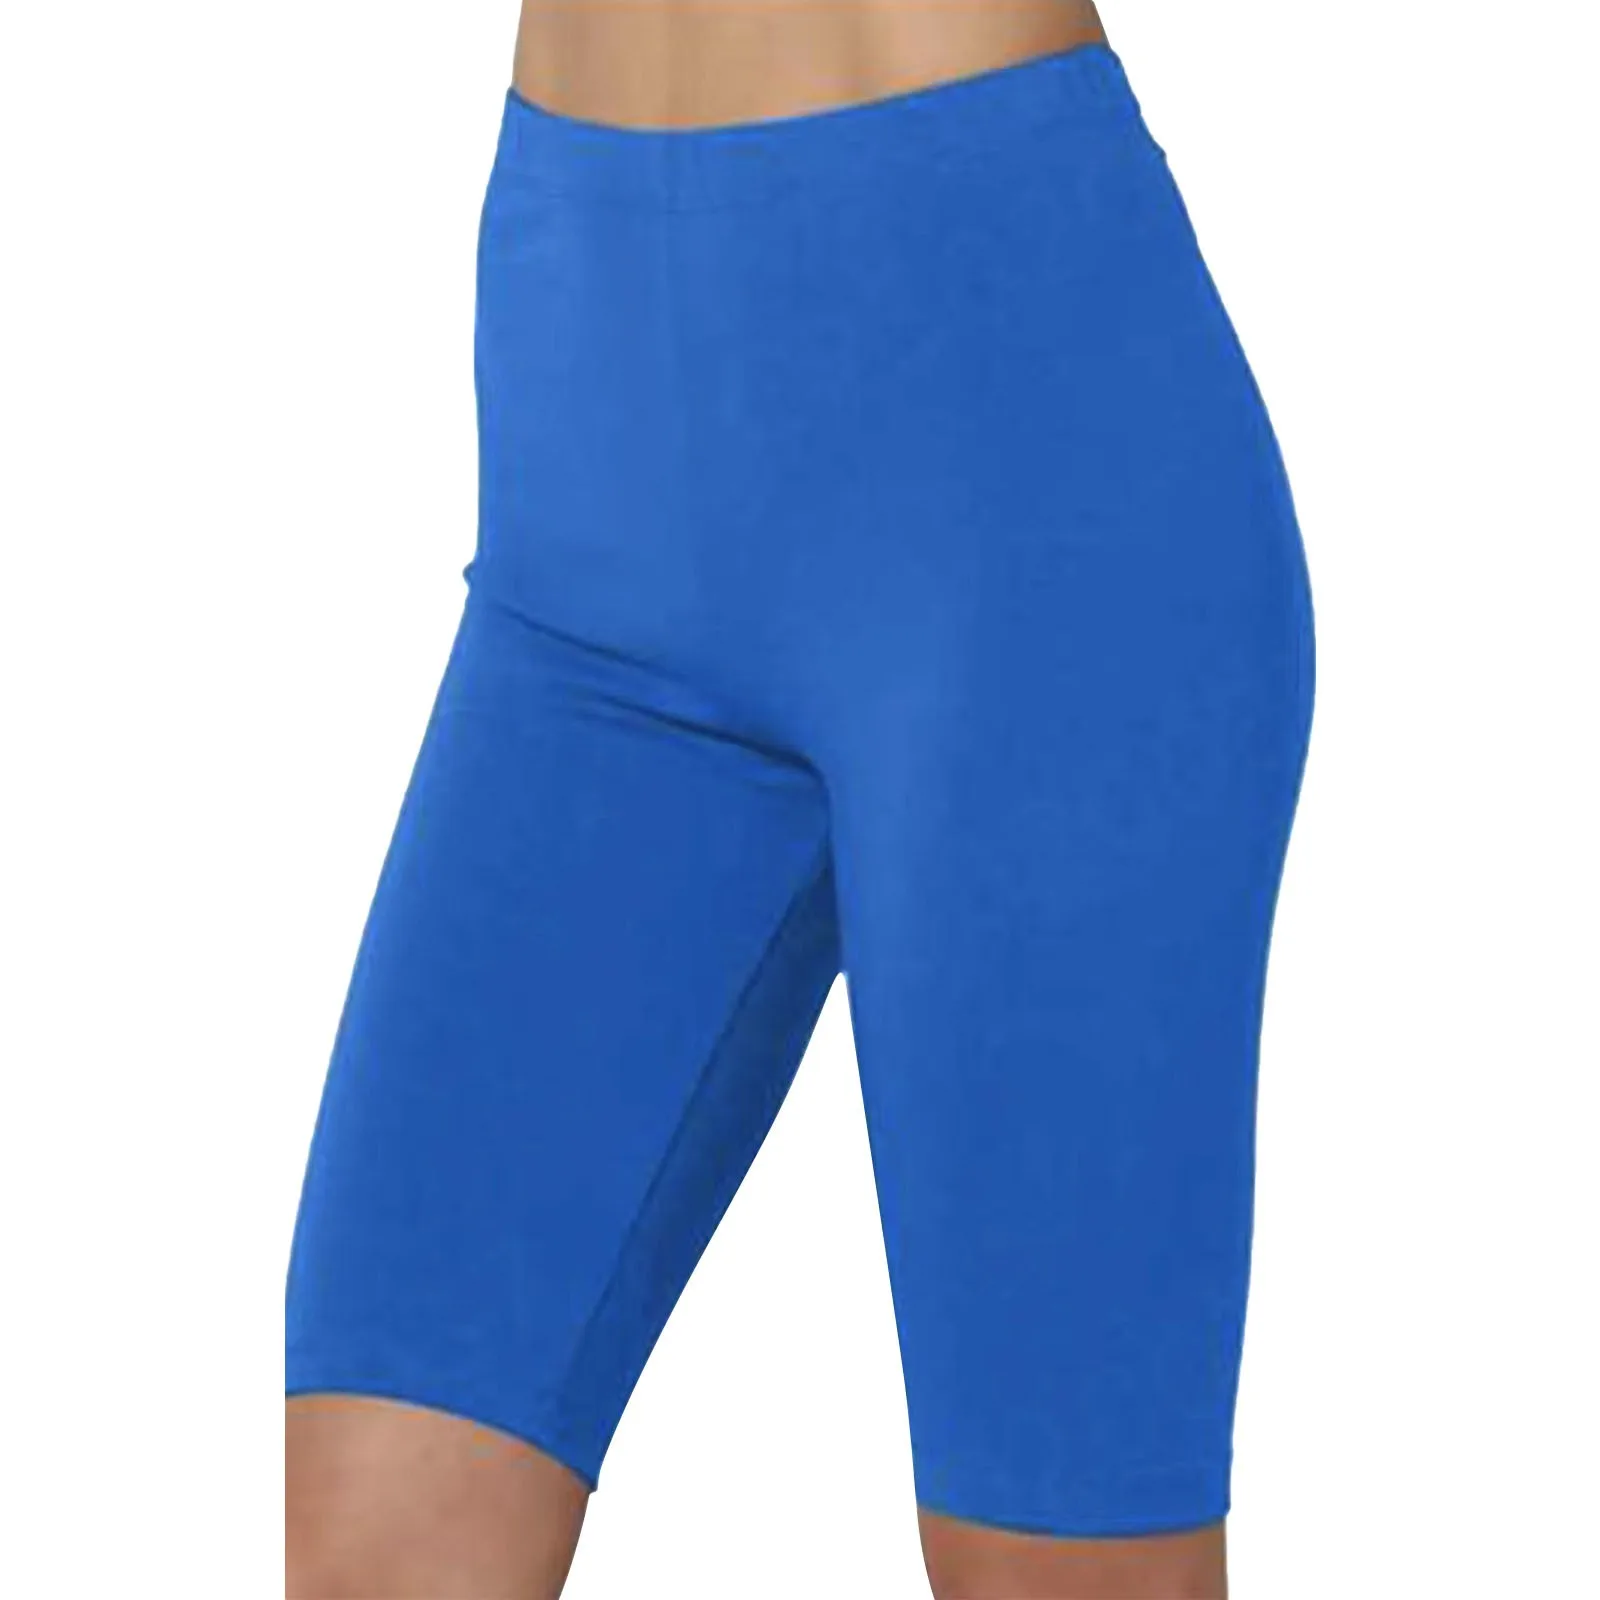 Женские спортивные штаны для йоги для похудения, леггинсы для бега, фитнеса, йоги, туники, брюки для беременных